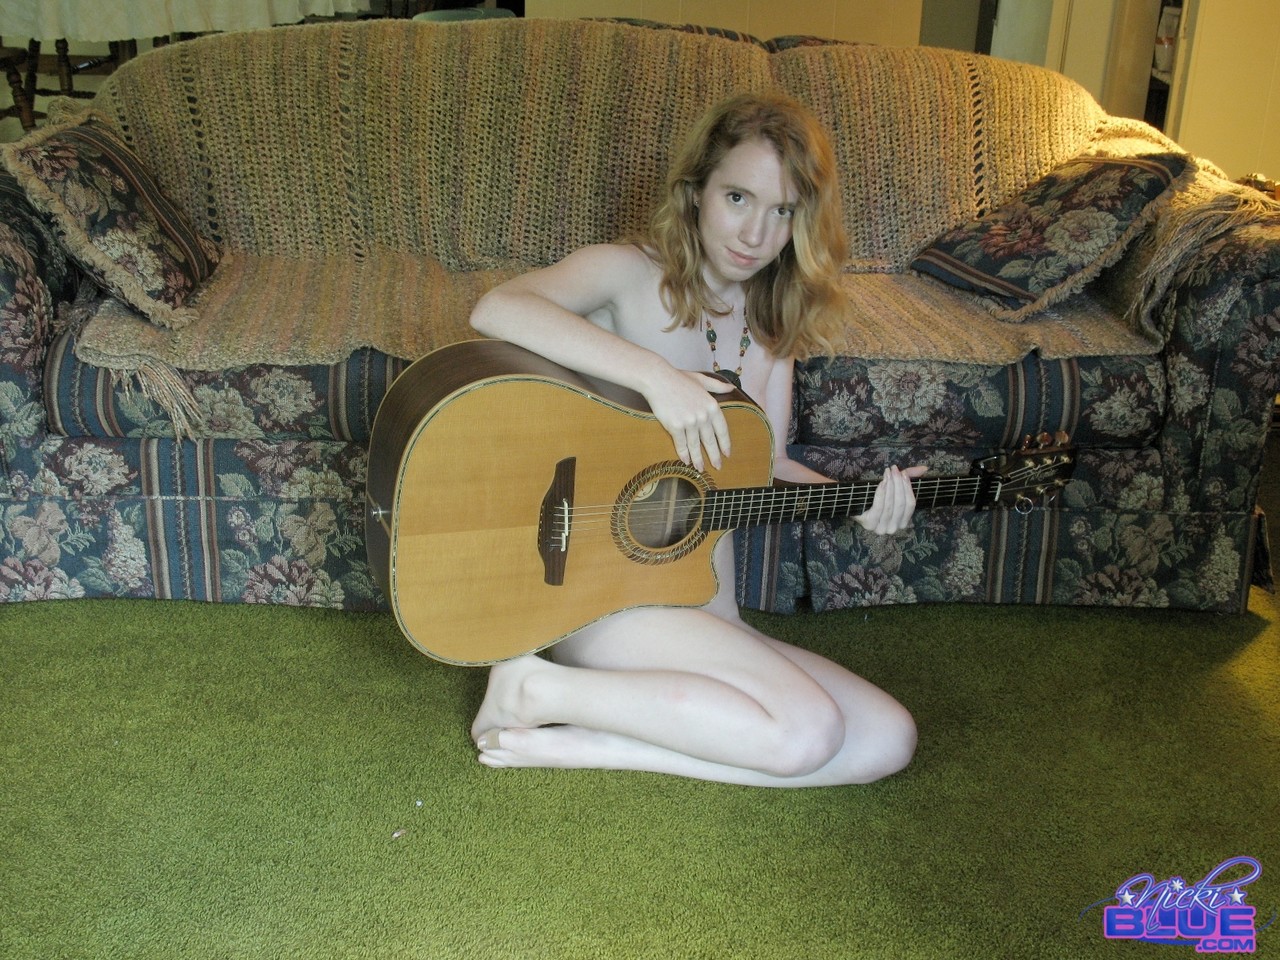 19-year-old babe Nicki Blue posing nude with a guitar in her hands foto pornográfica #424548936 | Pornstar Platinum Pics, Nicki Blue, Redhead, pornografia móvel